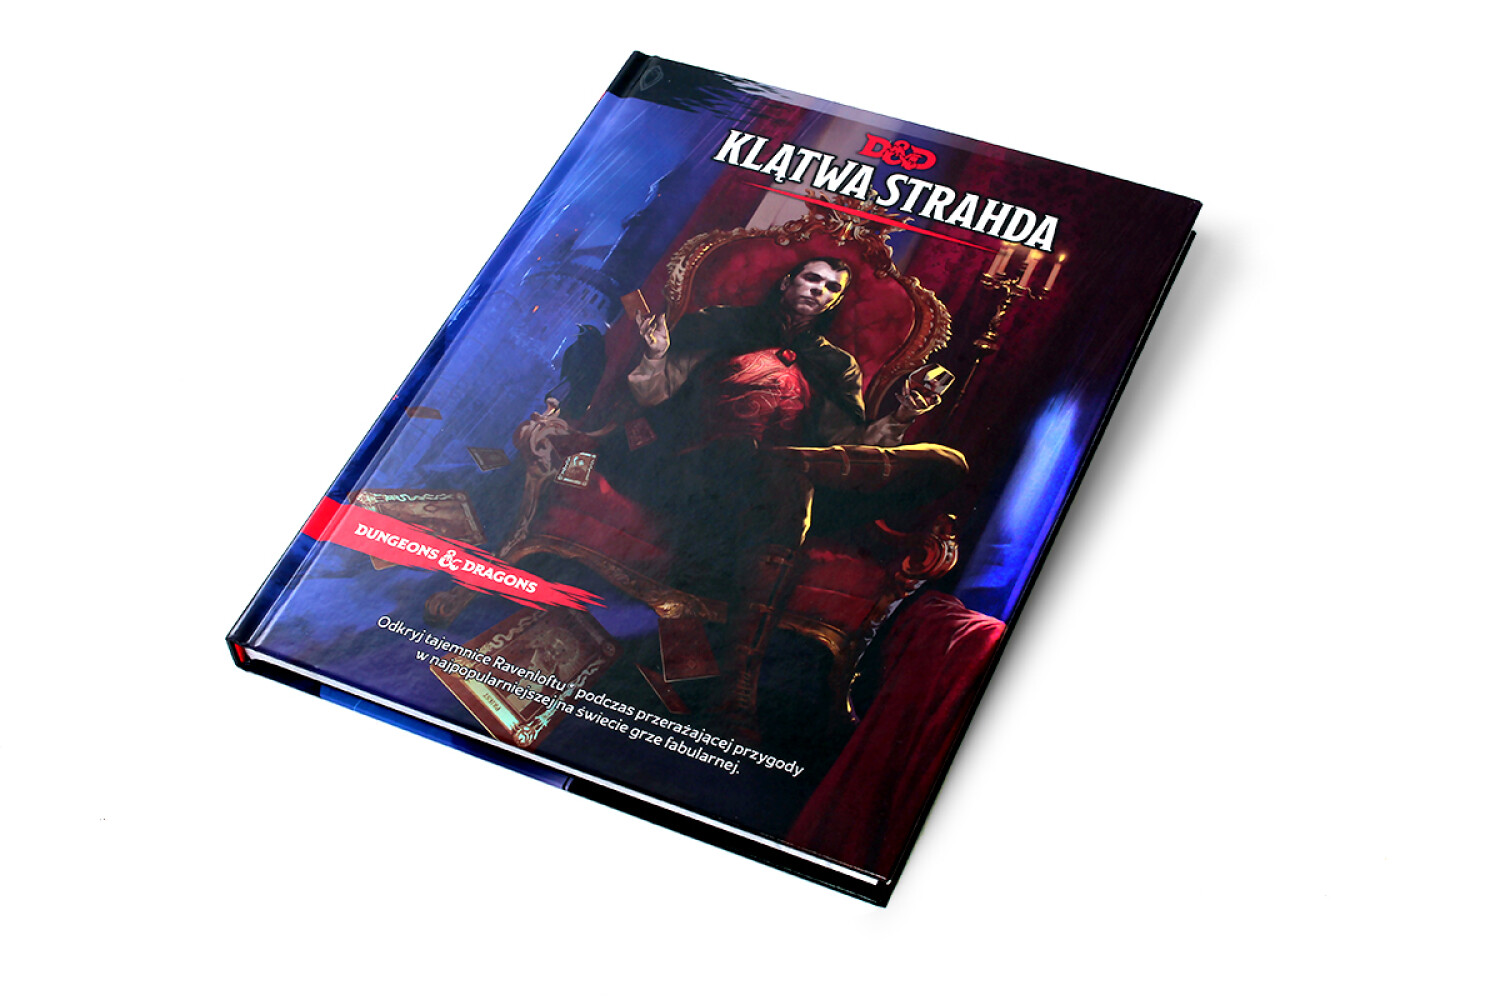 Dungeons & Dragons: Klątwa Strahda- REBEL.pl